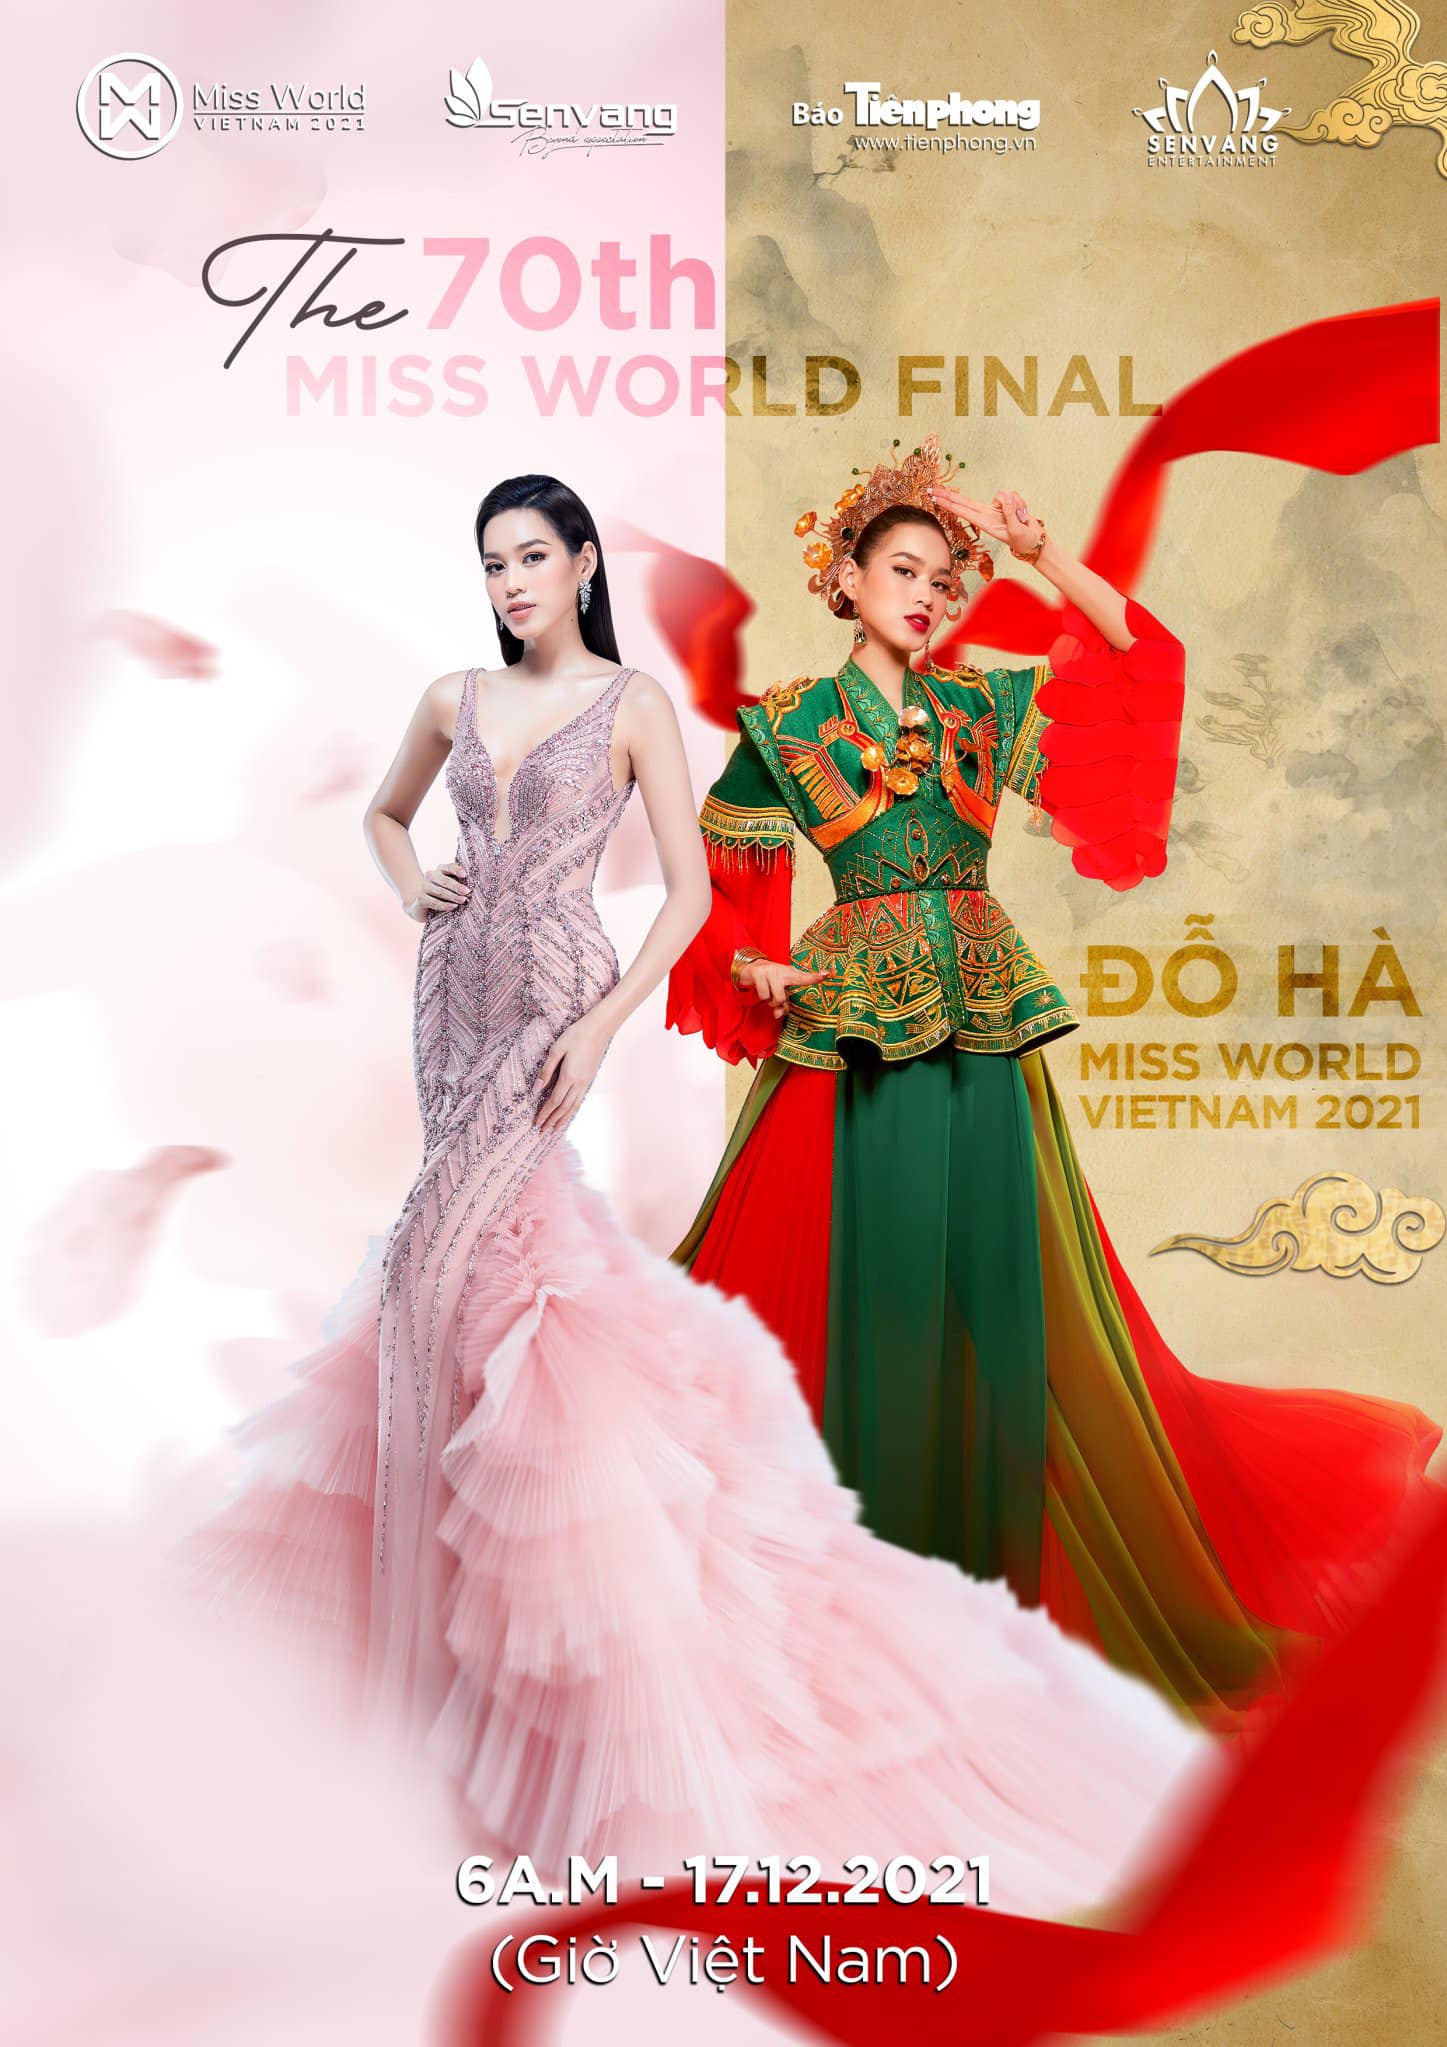 Chung kết Miss World 2021 dự kiến tổ chức vào 6h sáng 17/12 tuy đã bị hoãn trước giờ G.